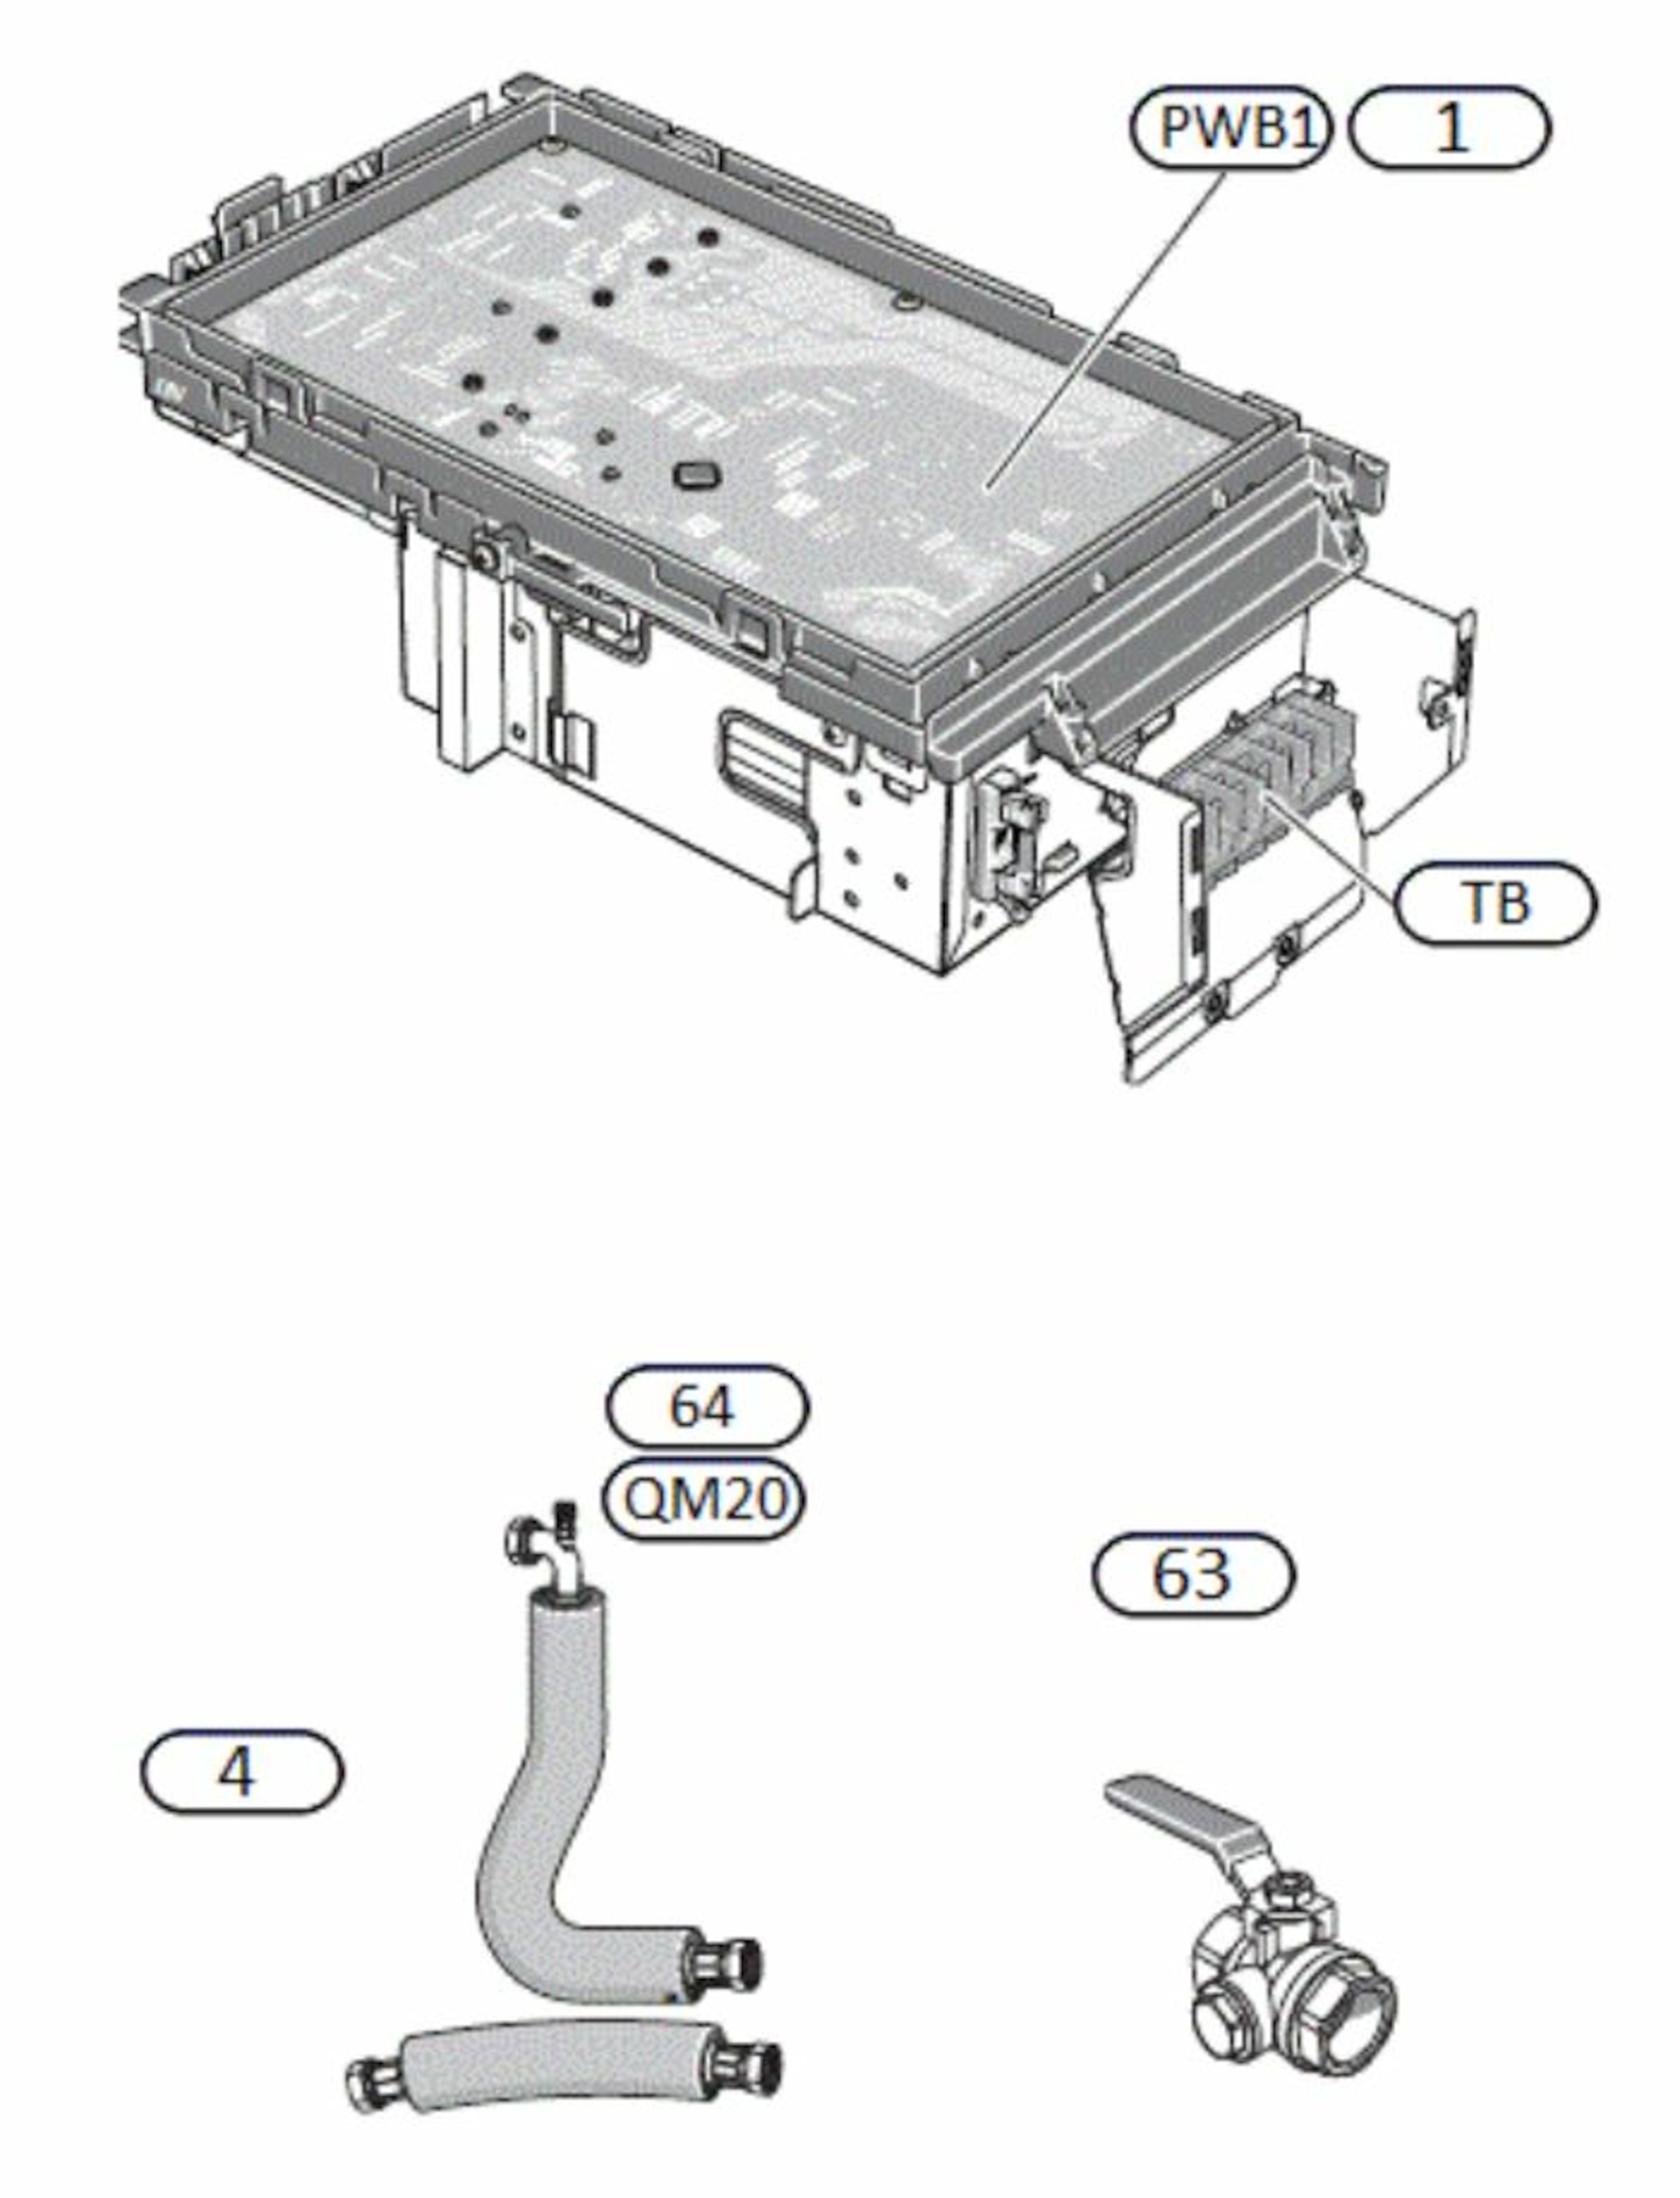 F2050-6 Inverter, 1~ 230 V, luft-vann monoblokk varmepumpe